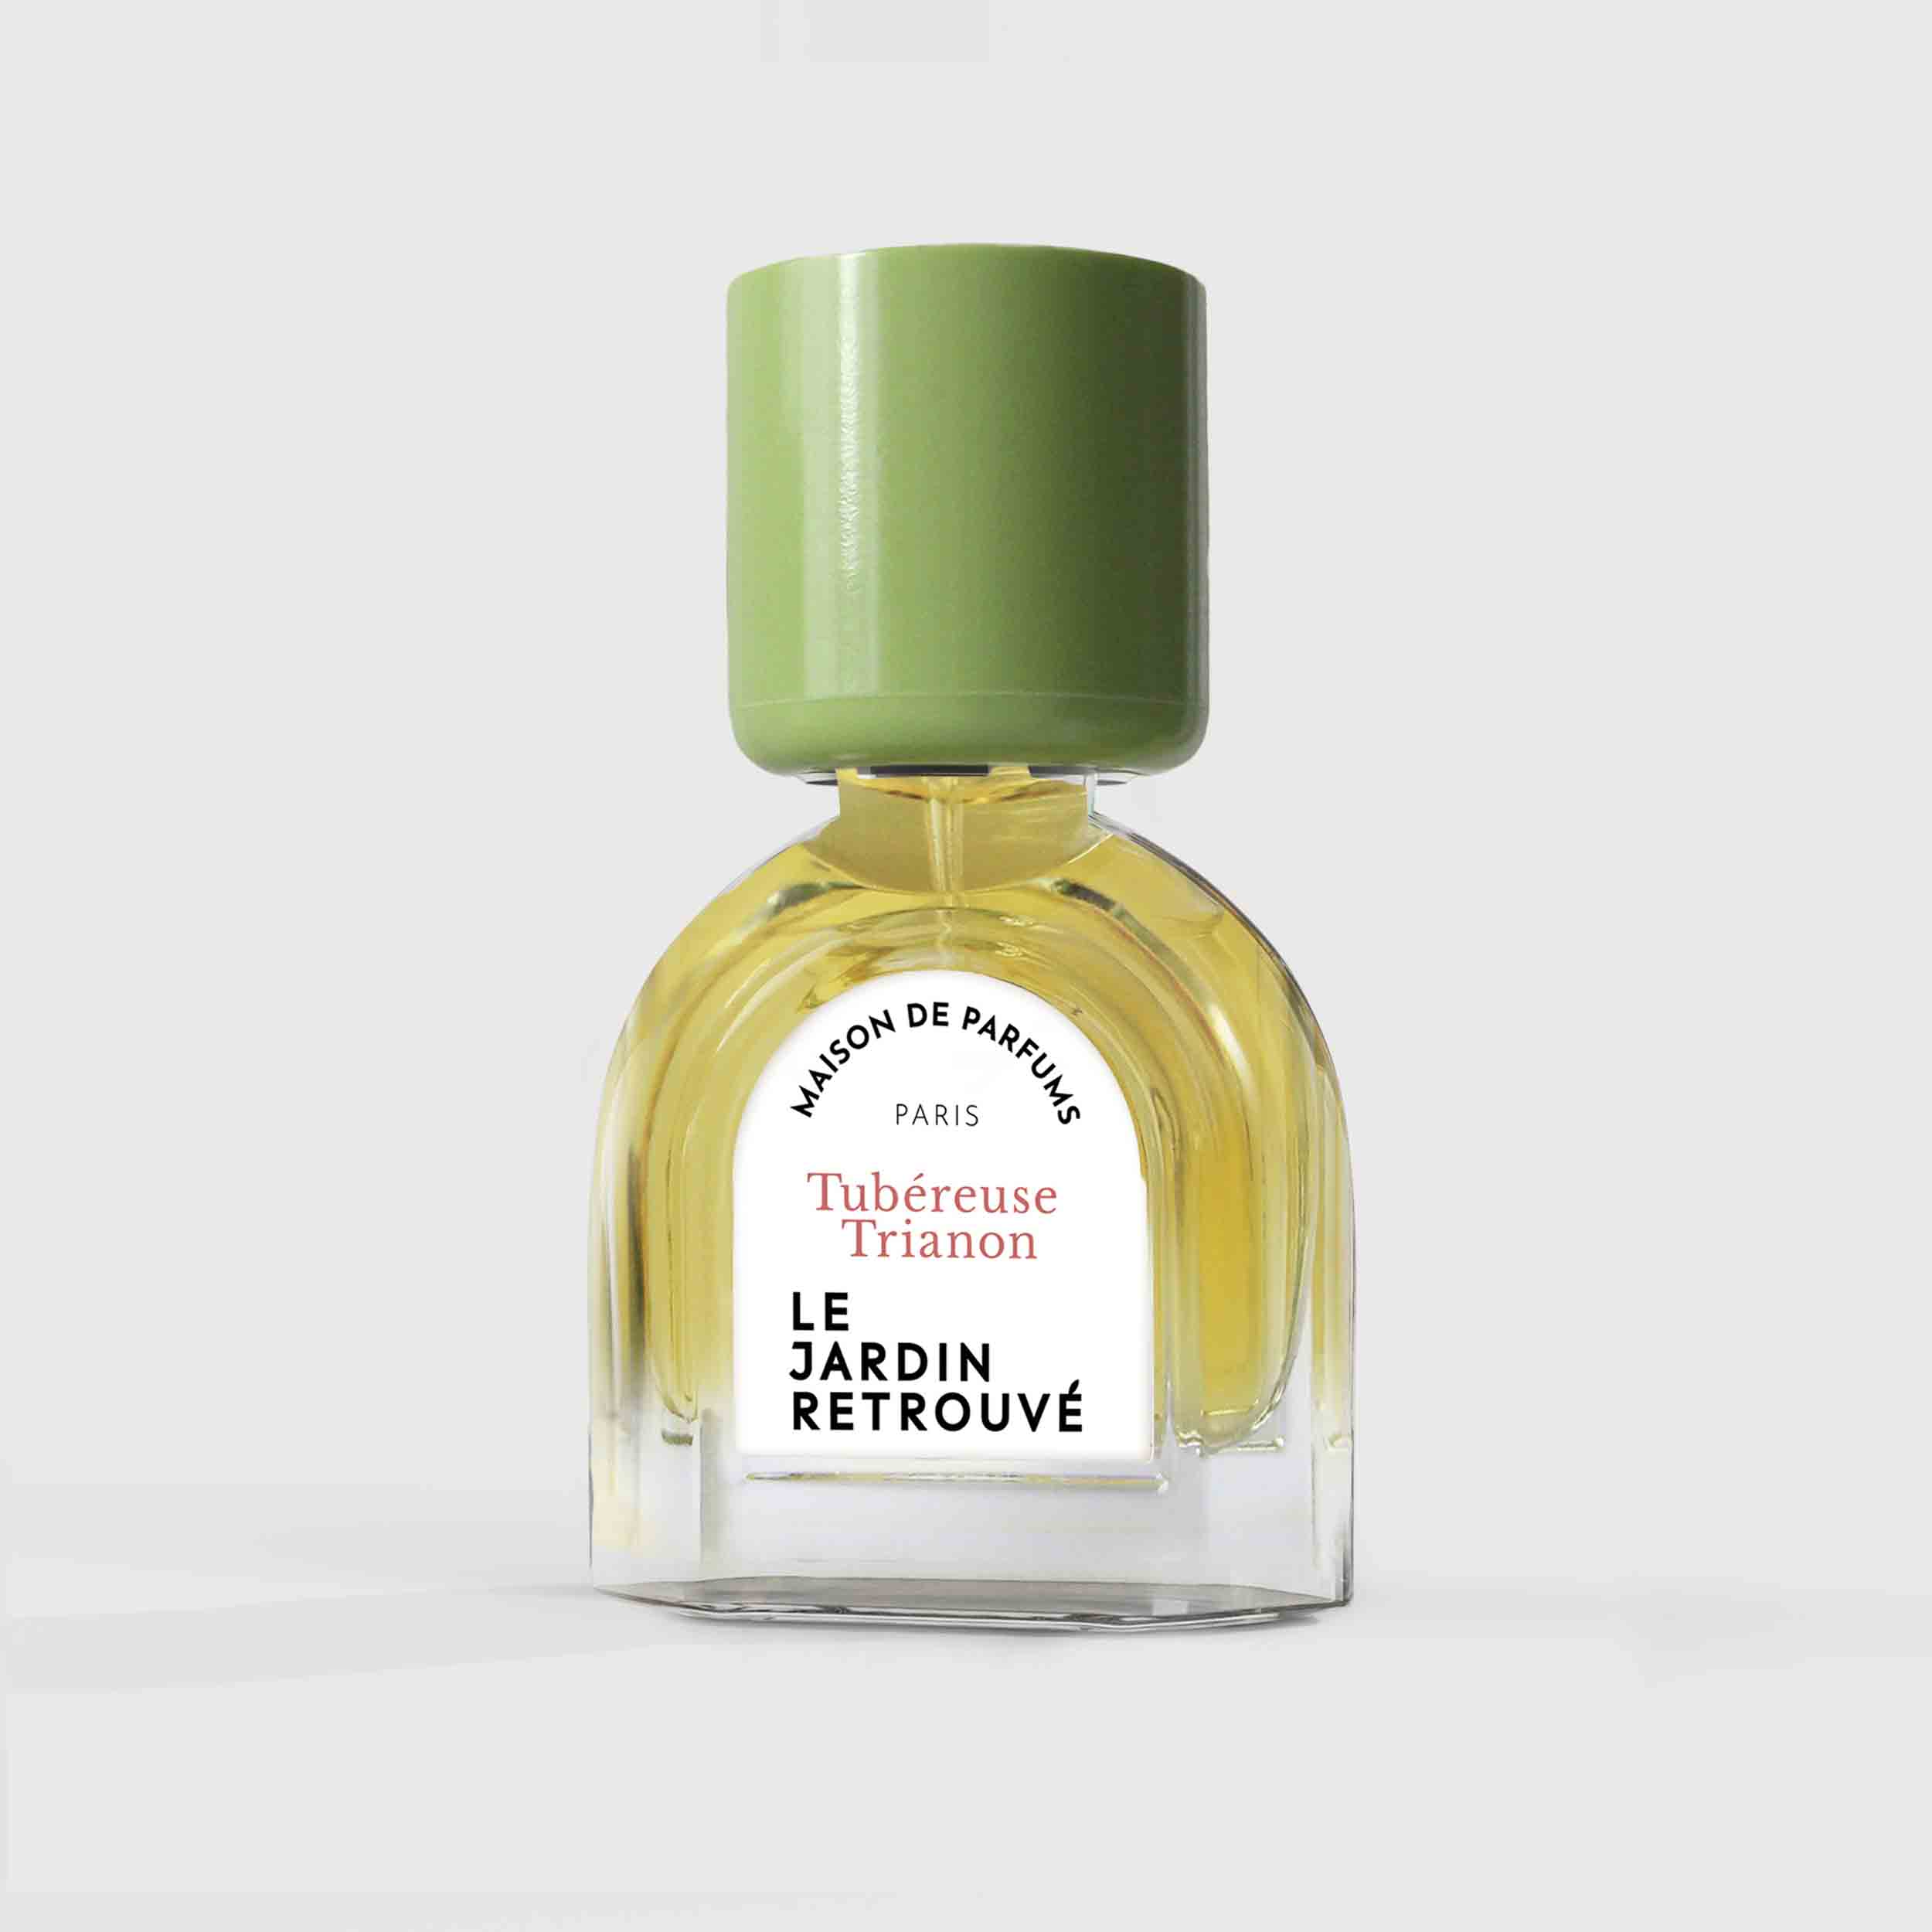 Tubéreuse Trianon Eau de Parfum 15ml Bottle by Le Jardin Retrouvé